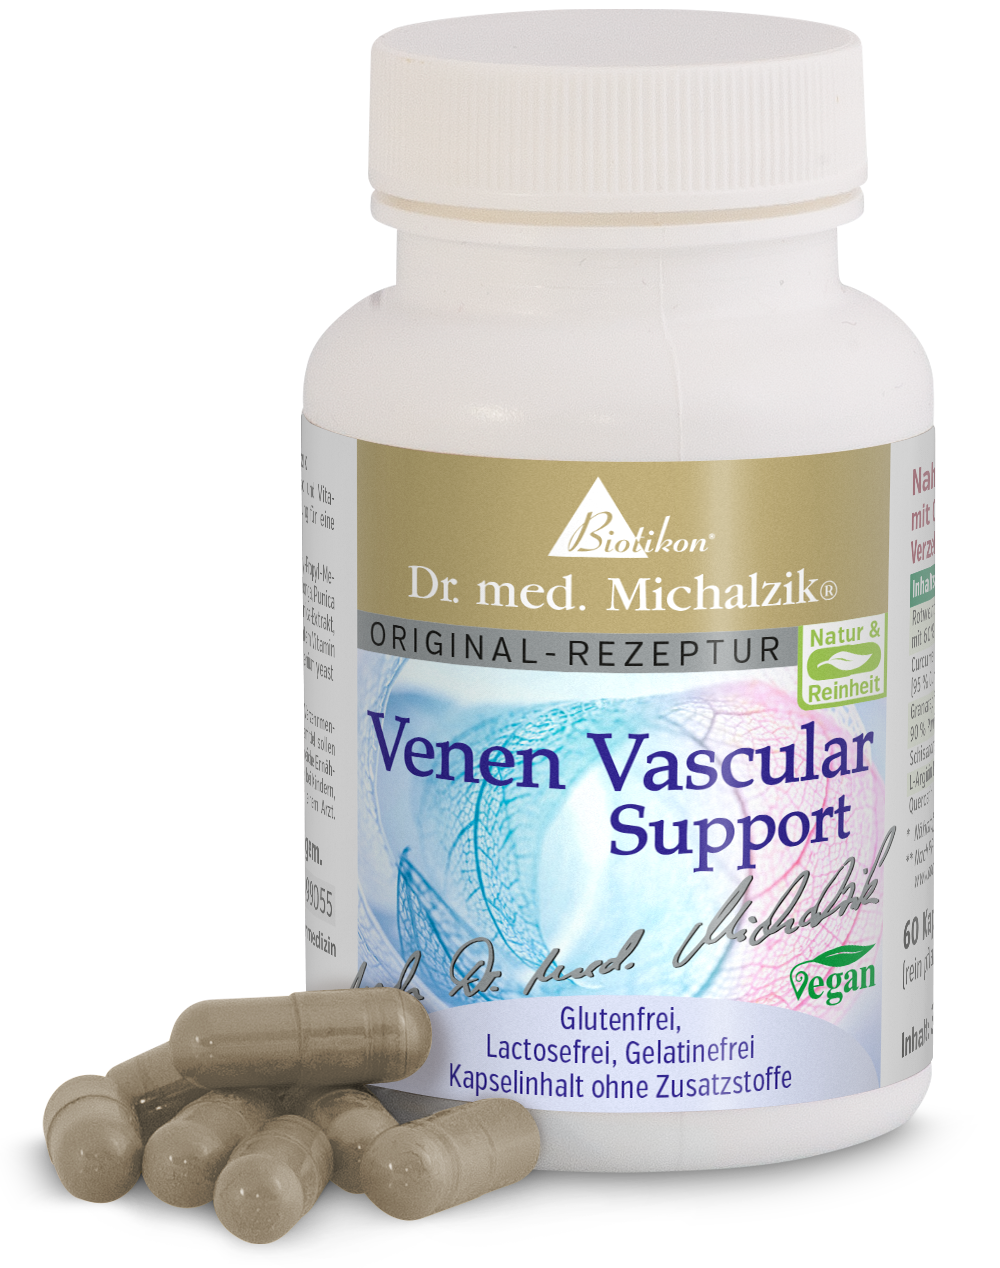 Venen Vascular Support